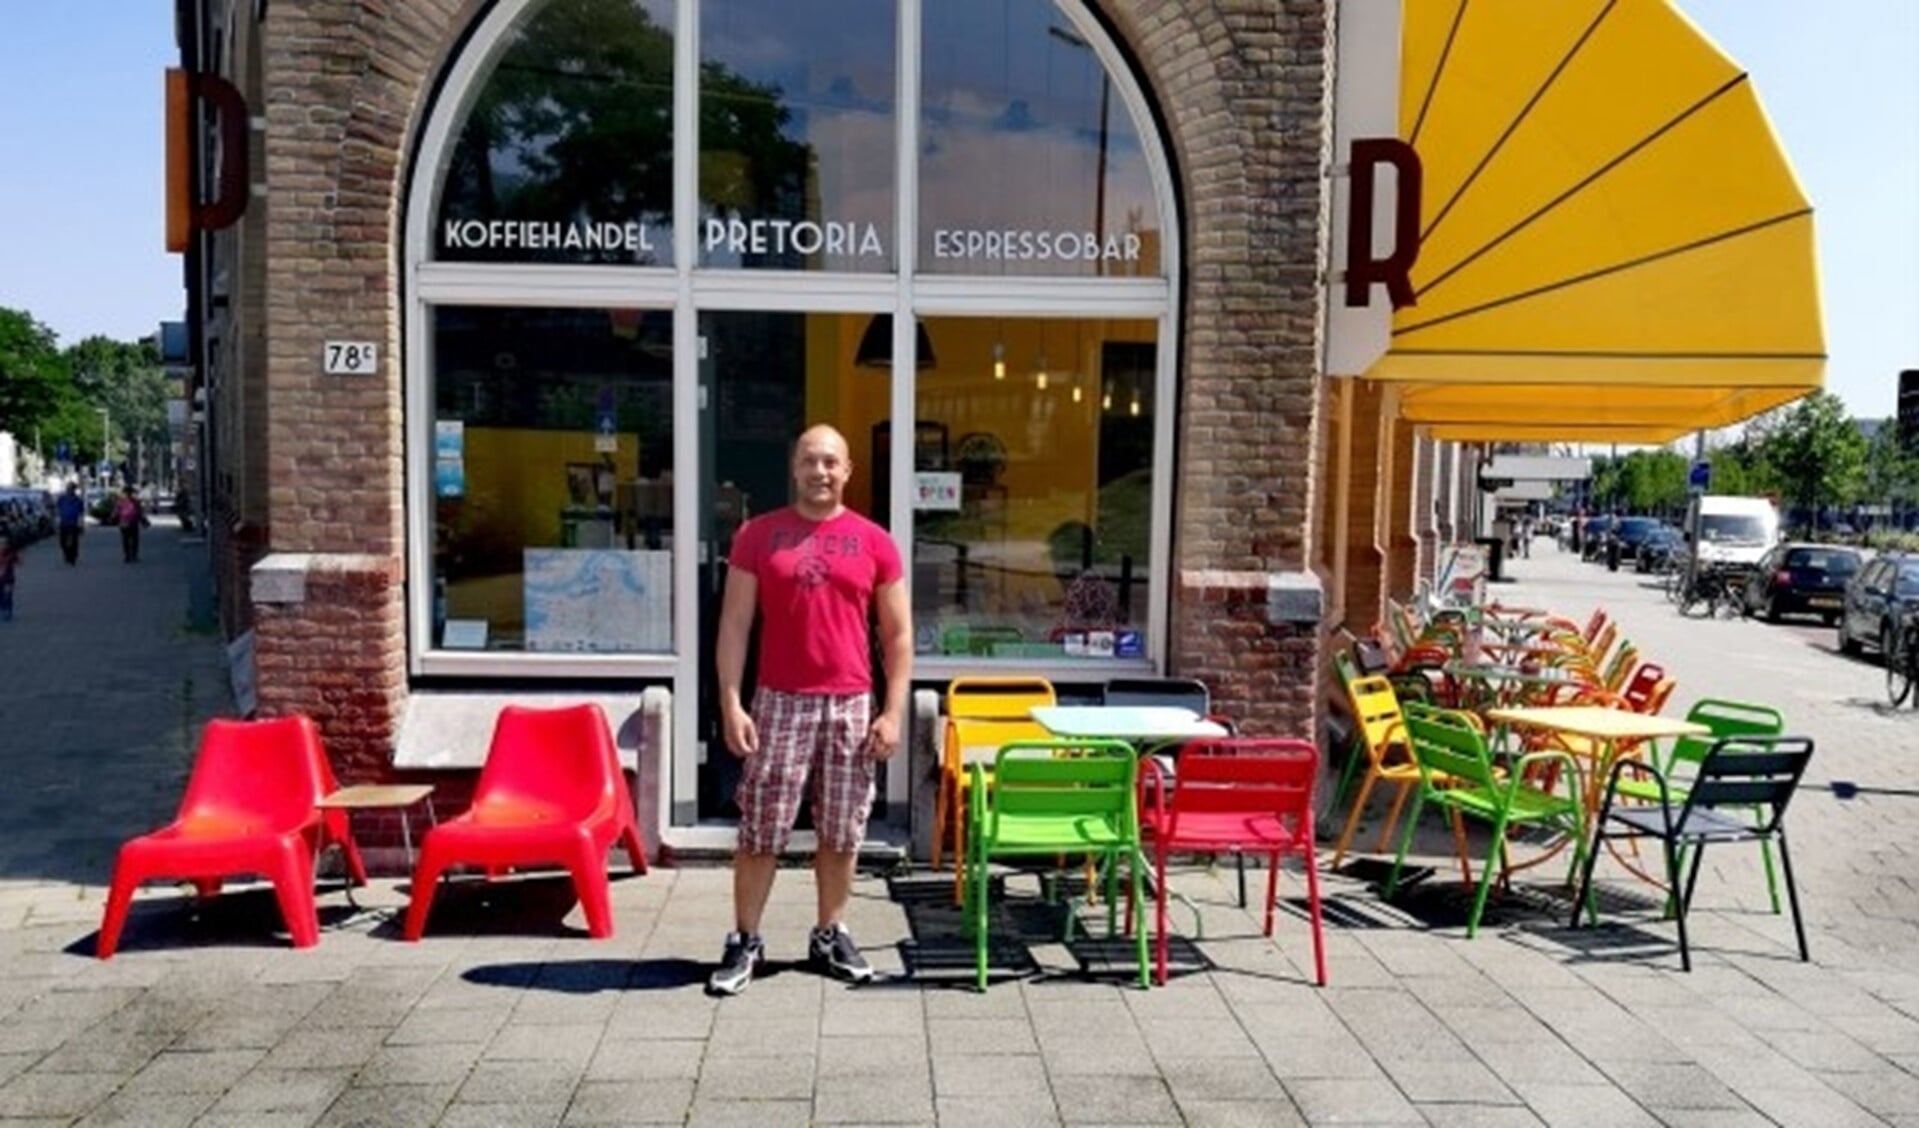 Steve is (mede)eigenaar van Koffiehandel Pretoria Espressobar. Hij komt uit Brabant maar is nu al vijftien jaar gelukkig op Zuid. 